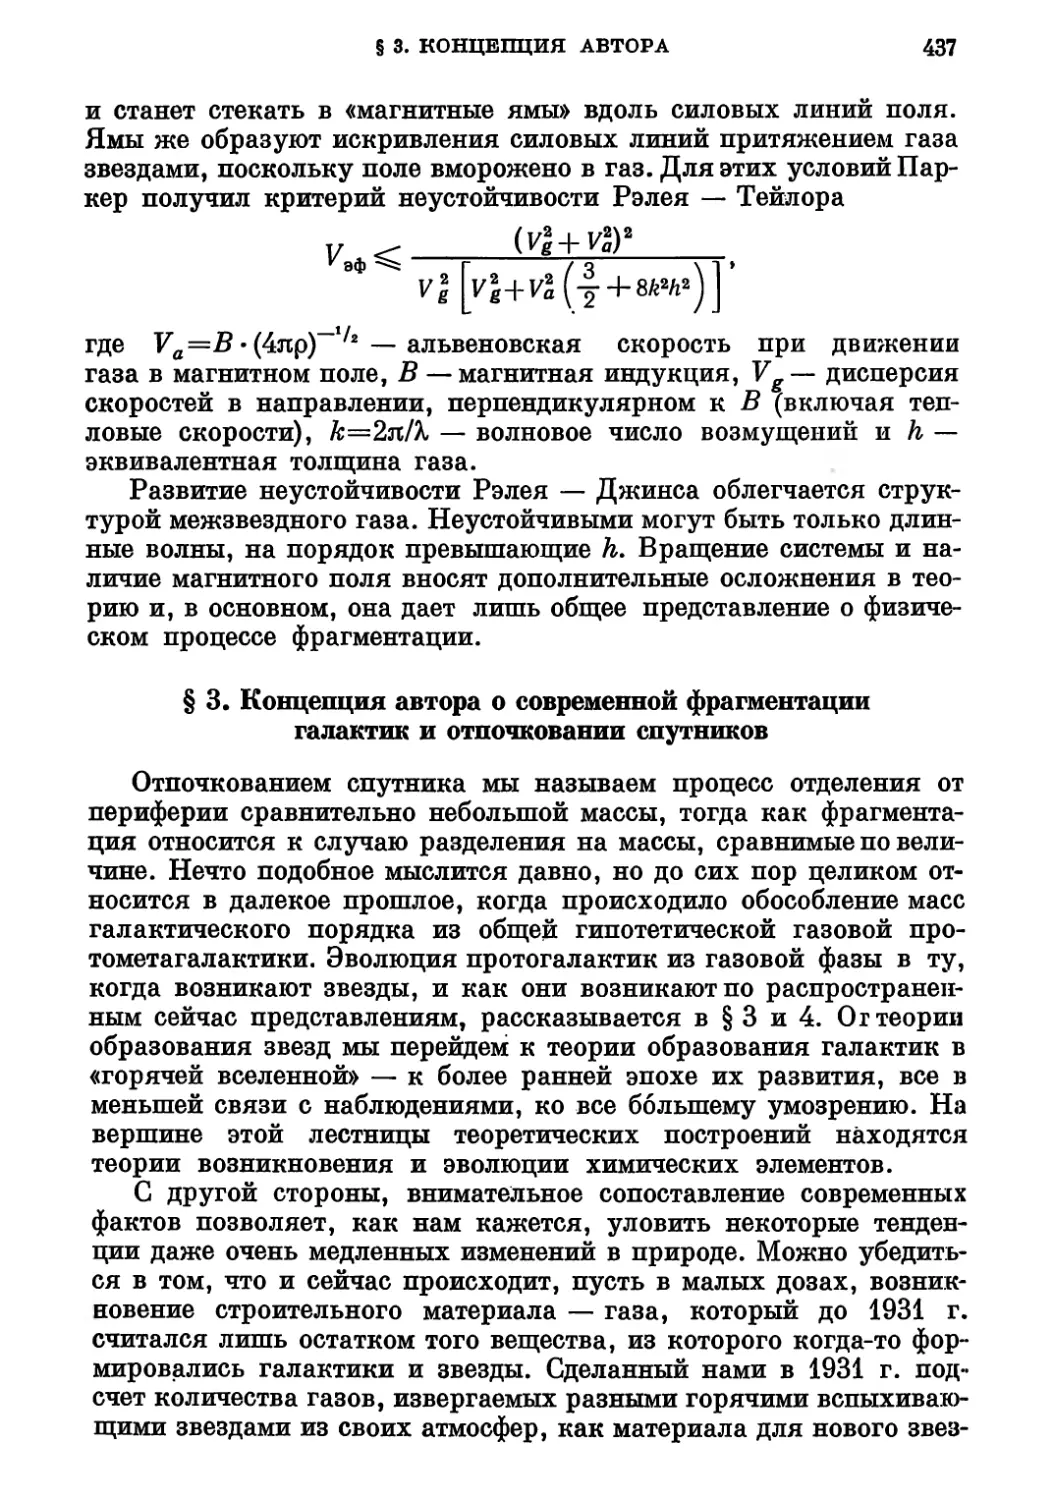 § 3. Концепция автора о современной фрагментации галактик и отпочковании спутников